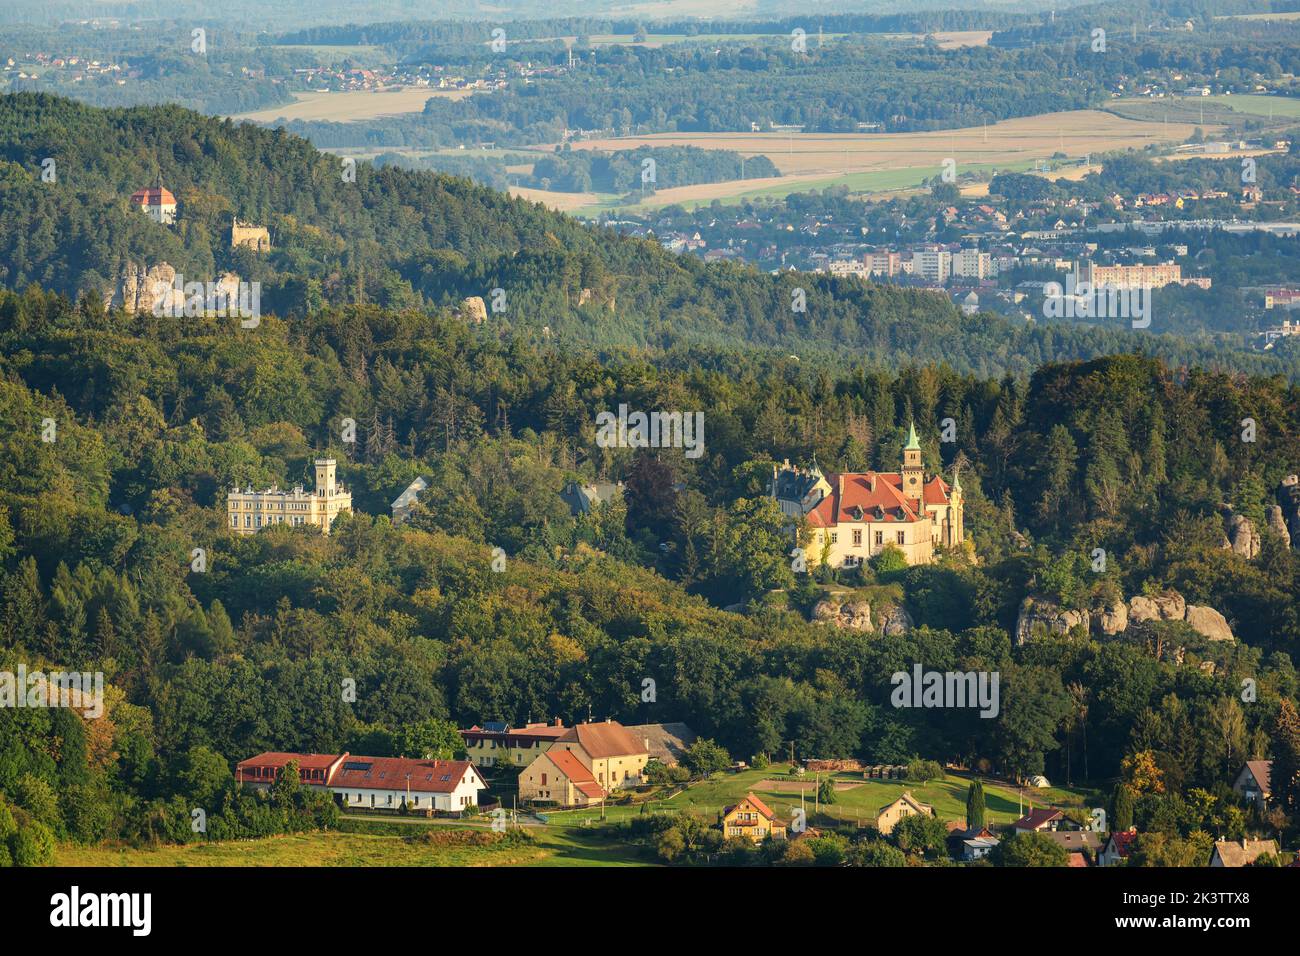 Hruba skala castello costruito sulla cima di rocce di arenaria. Paradiso bohémien, ceco: Cesky raj, Repubblica Ceca. Foto di alta qualità Foto Stock